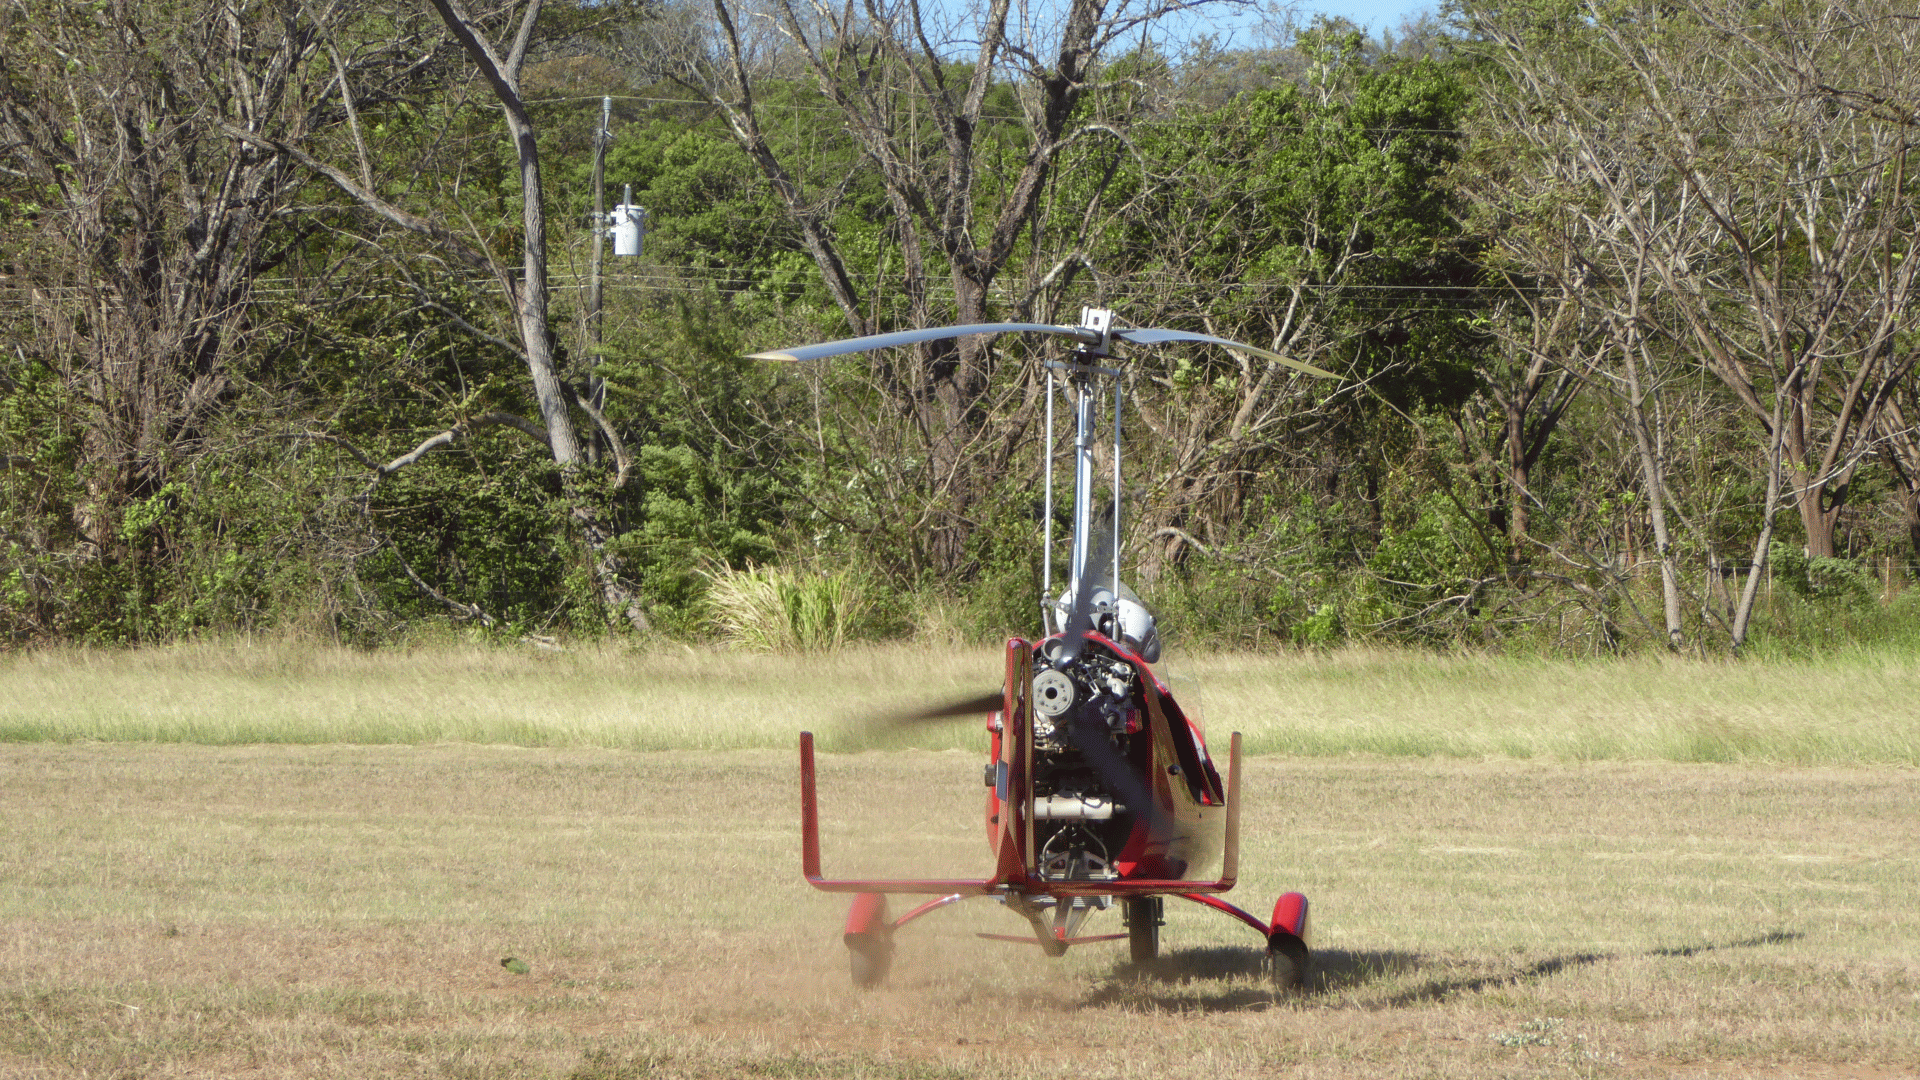 Gyrokopter flight